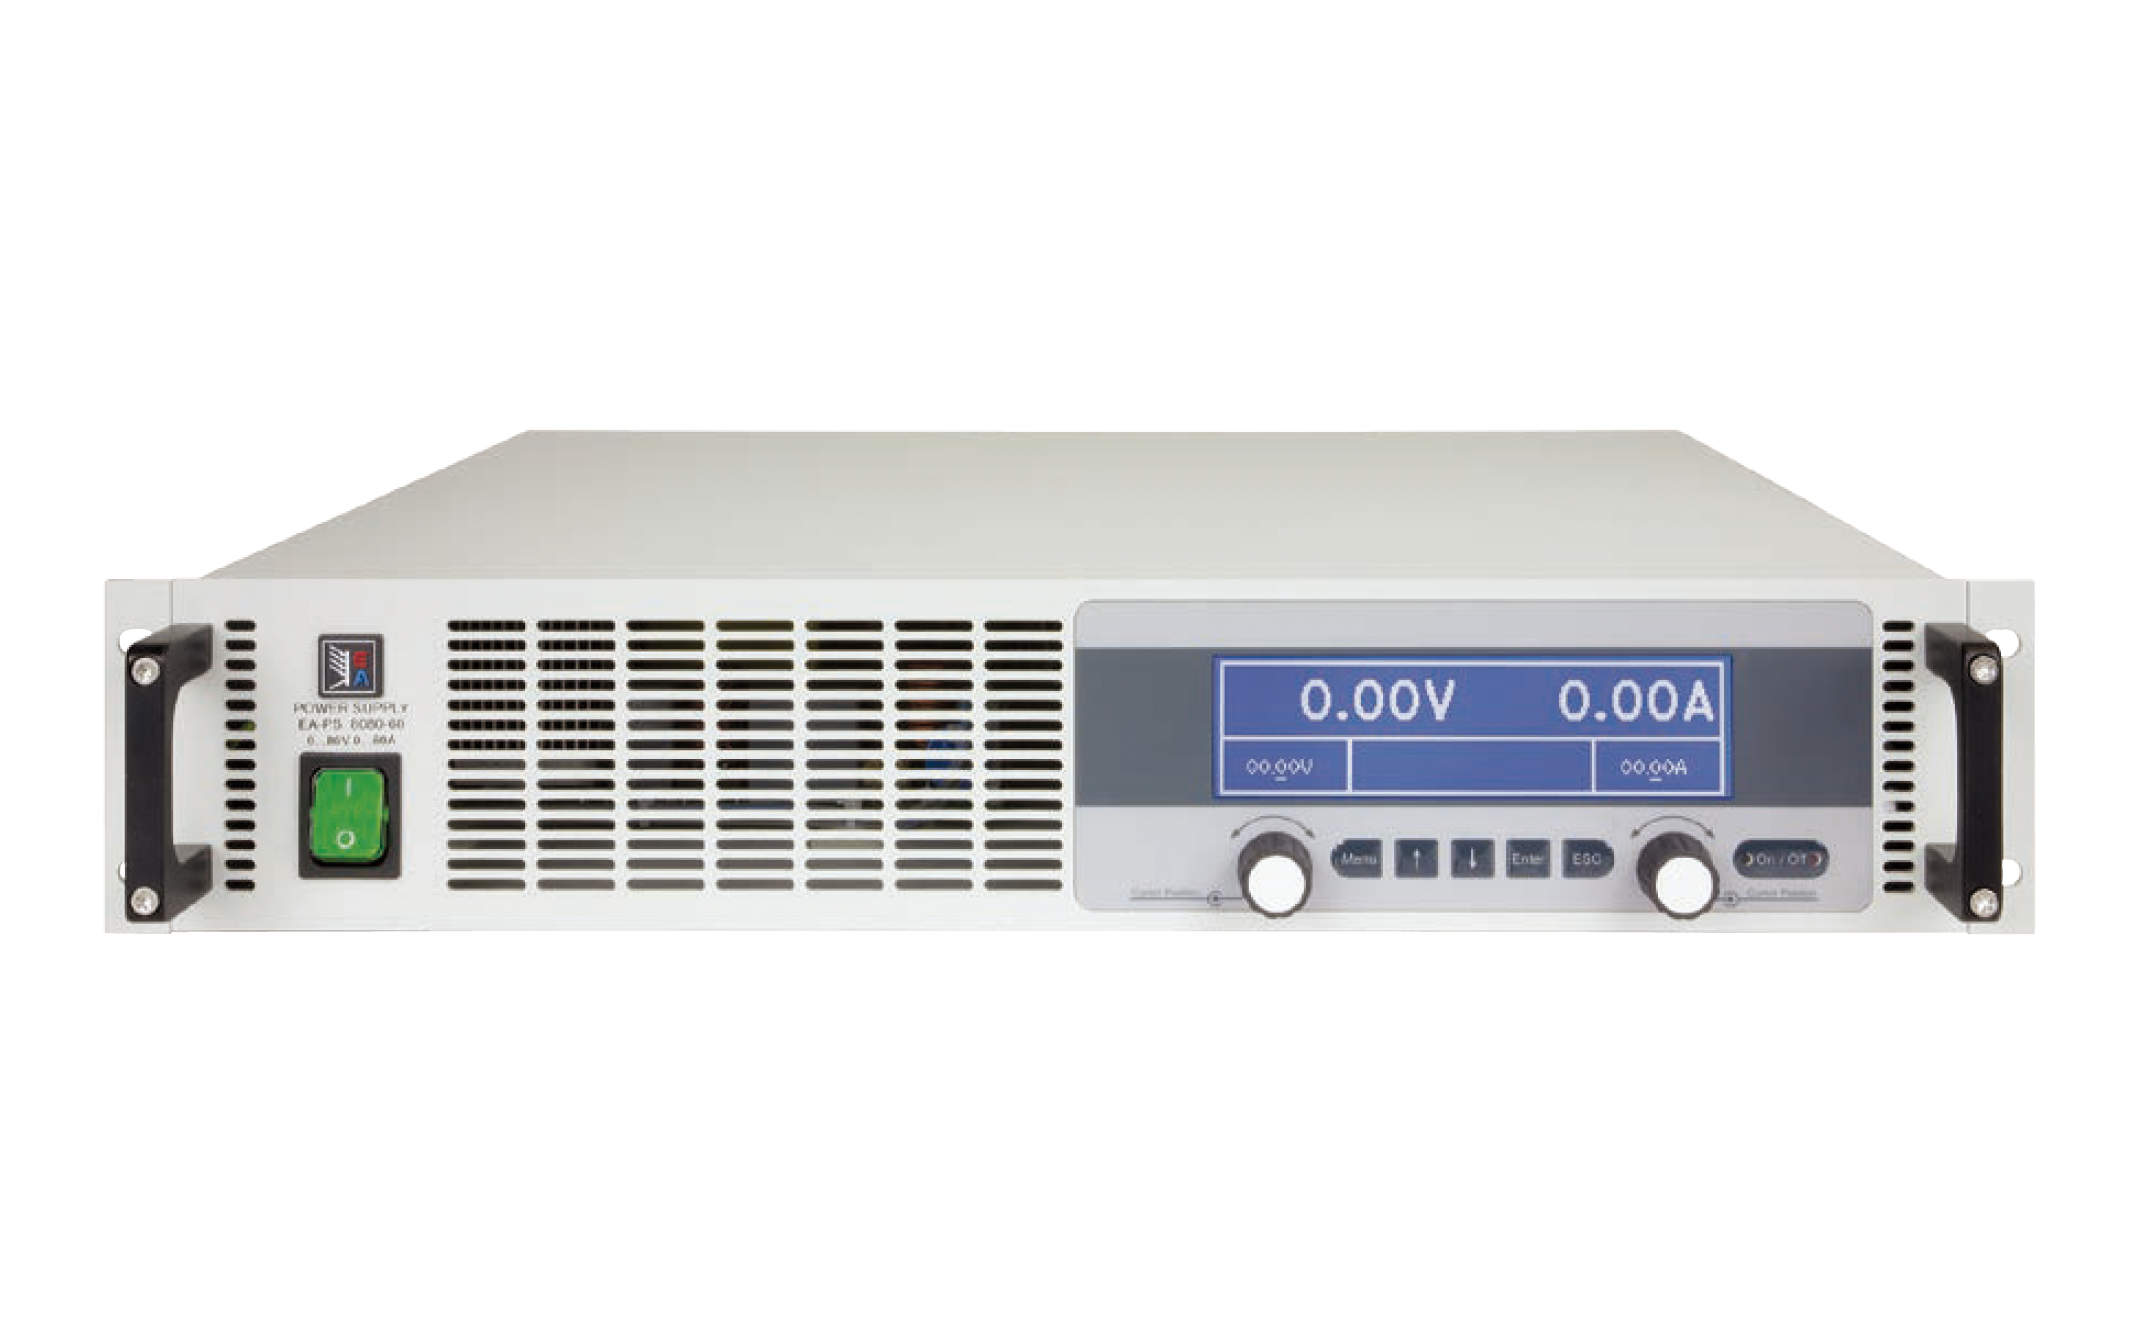 Программируемые источники питания
постоянного тока
 EA Elektro-Automatik серии PS 9000
 с максимальной выходной мощностью
от 1,5 кВт до 15 кВт